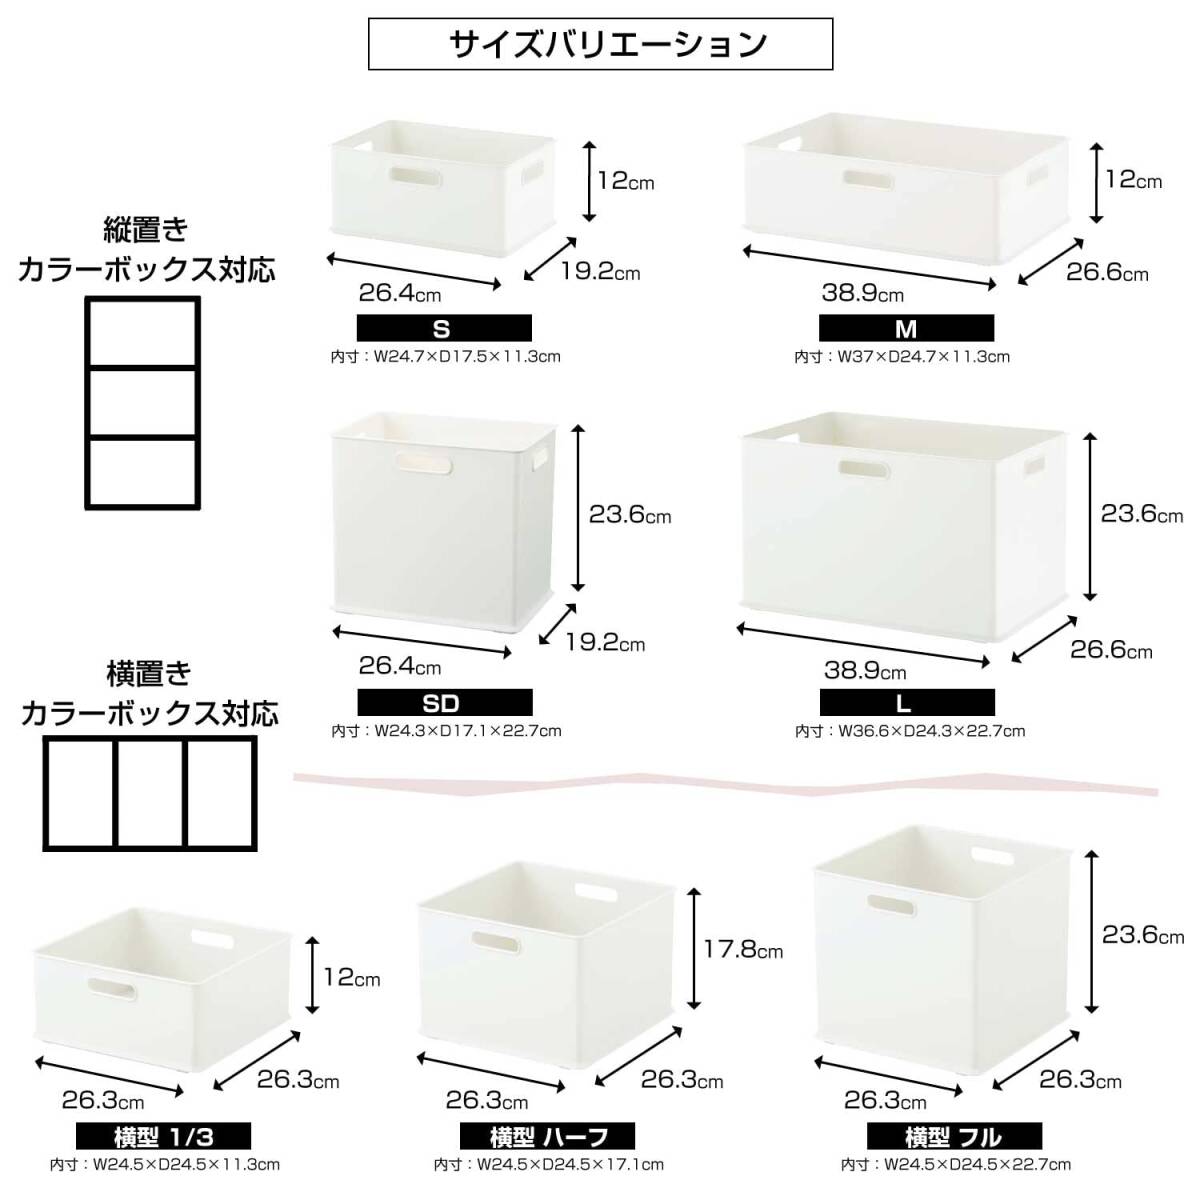 サンカ インボックス 「カラーボックスにぴったりフィット」する収納ボックス Lサイズ ホワイト (幅38.9×奥行26.6×高さ23.6cm)【_画像6